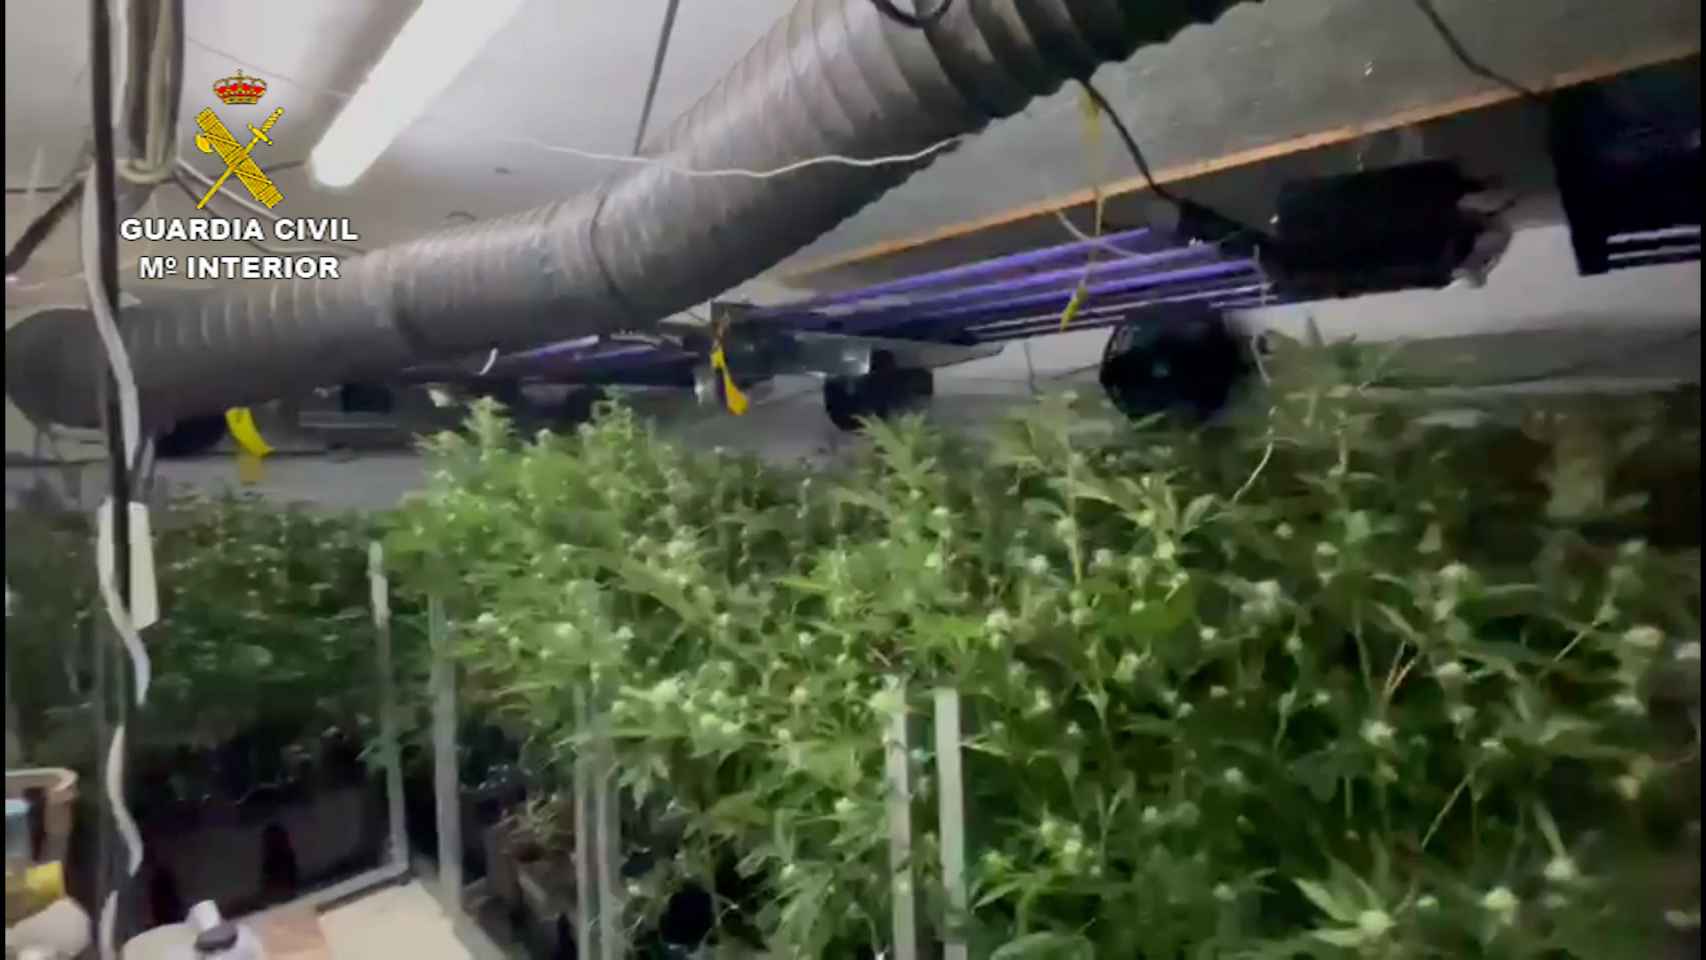 Plantación de marihuana incautada por los agentes.